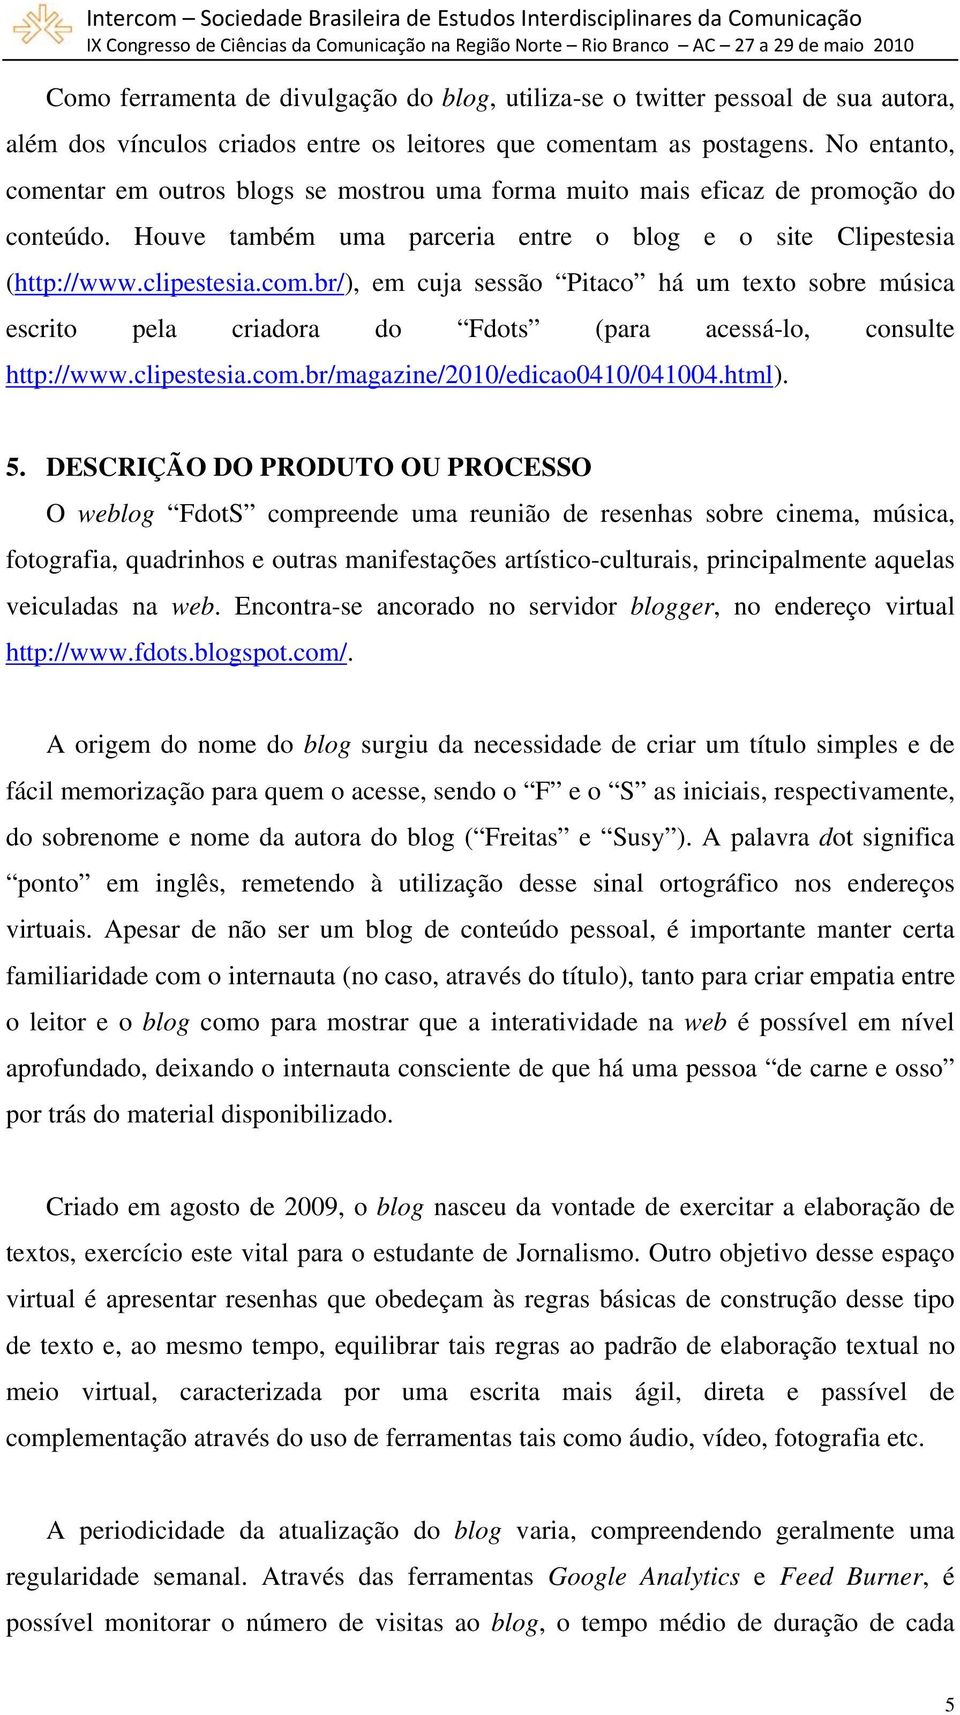 clipestesia.com.br/magazine/2010/edicao0410/041004.html). 5.